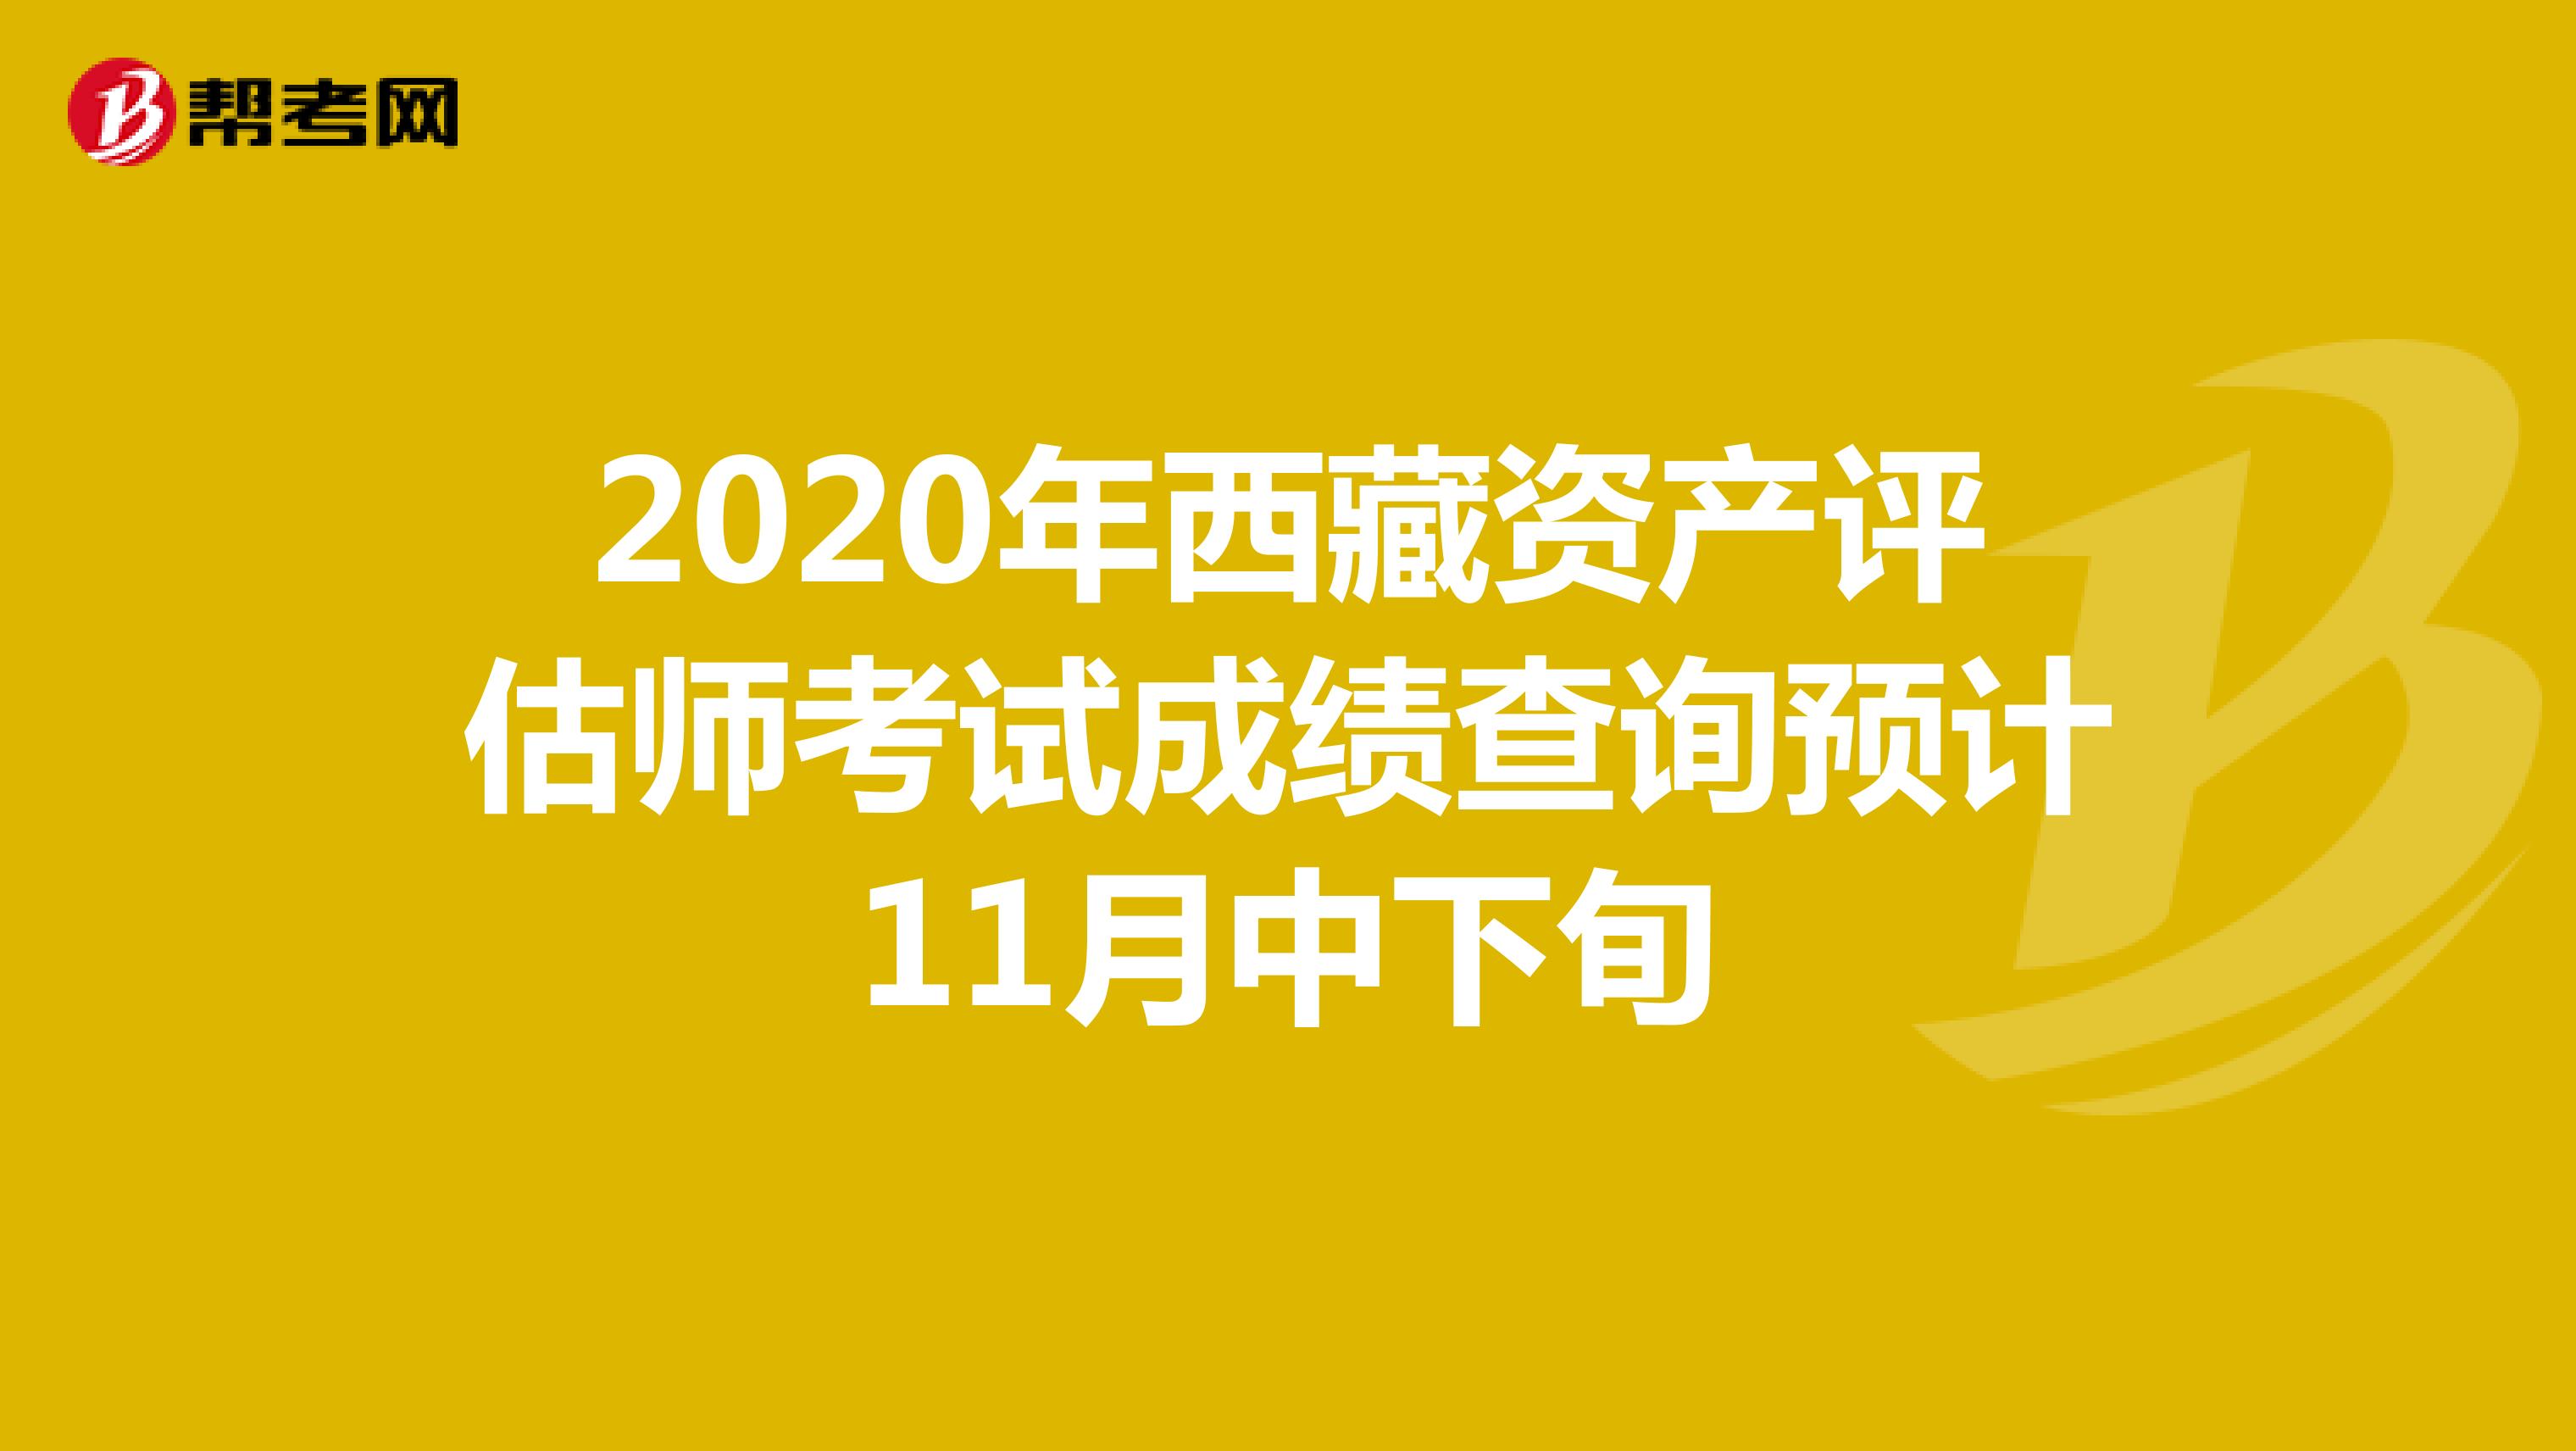 2020年西藏资产评估师考试成绩查询预计11月中下旬